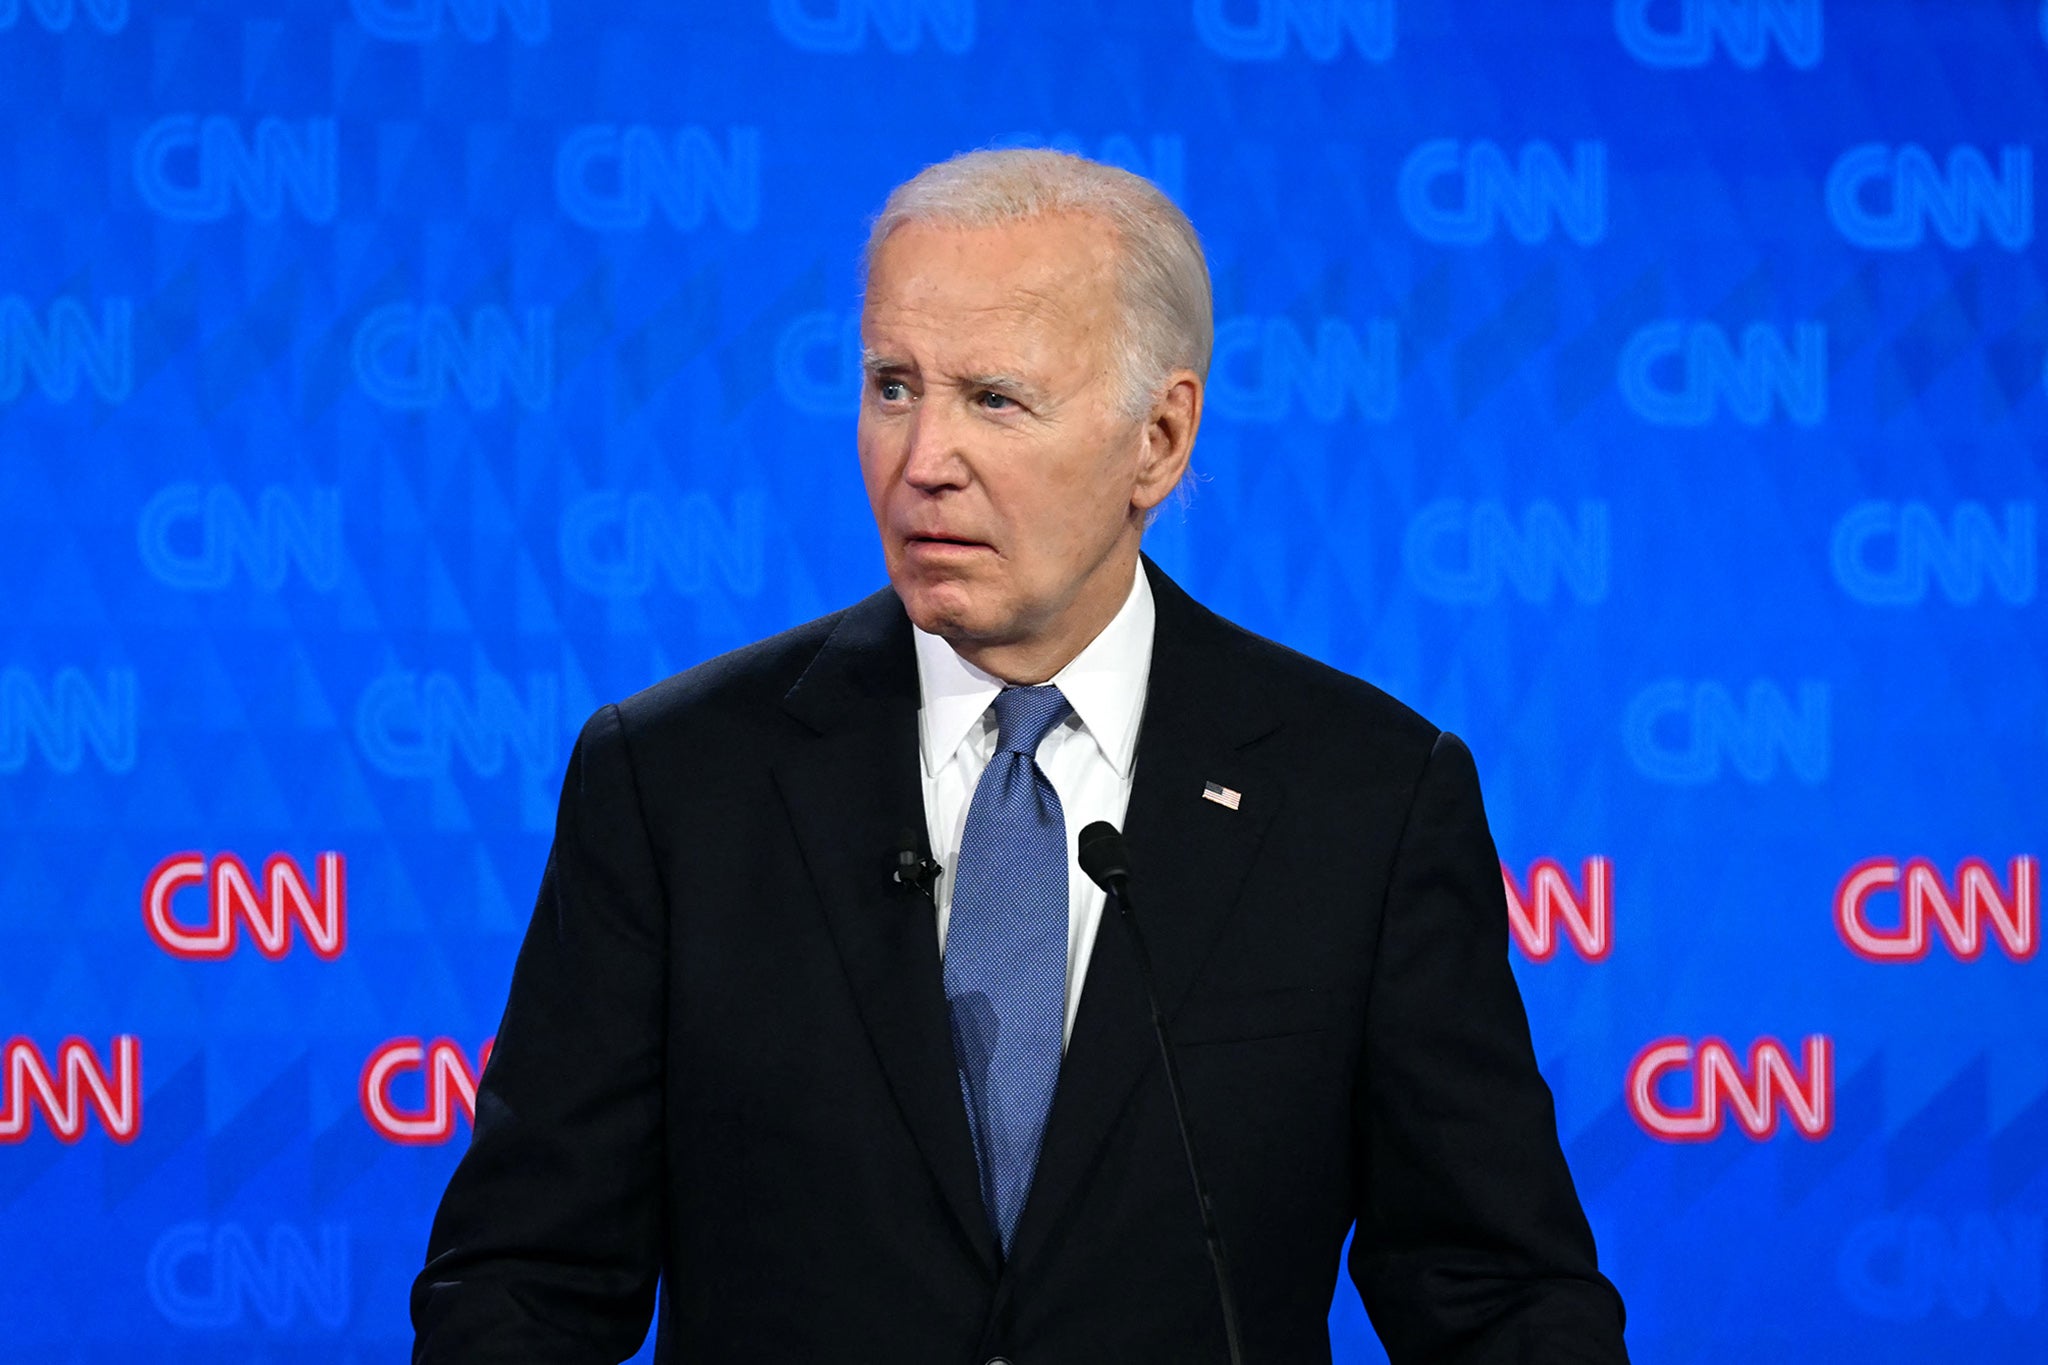 Biden during the presidential nominee debate with Trump last week